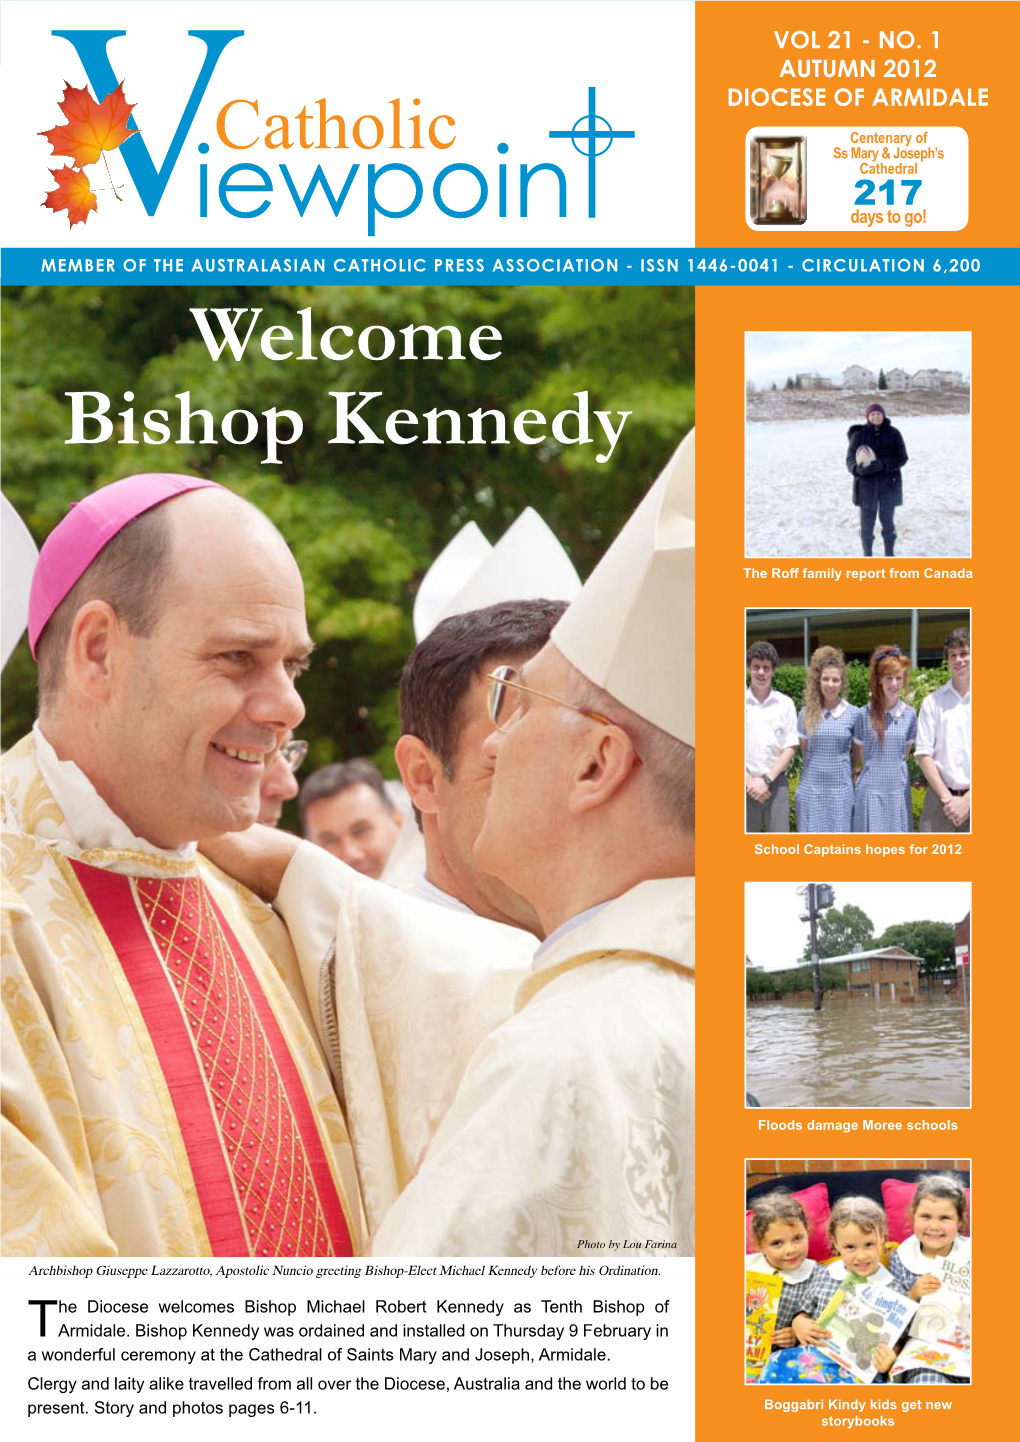 Bishop Kennedy